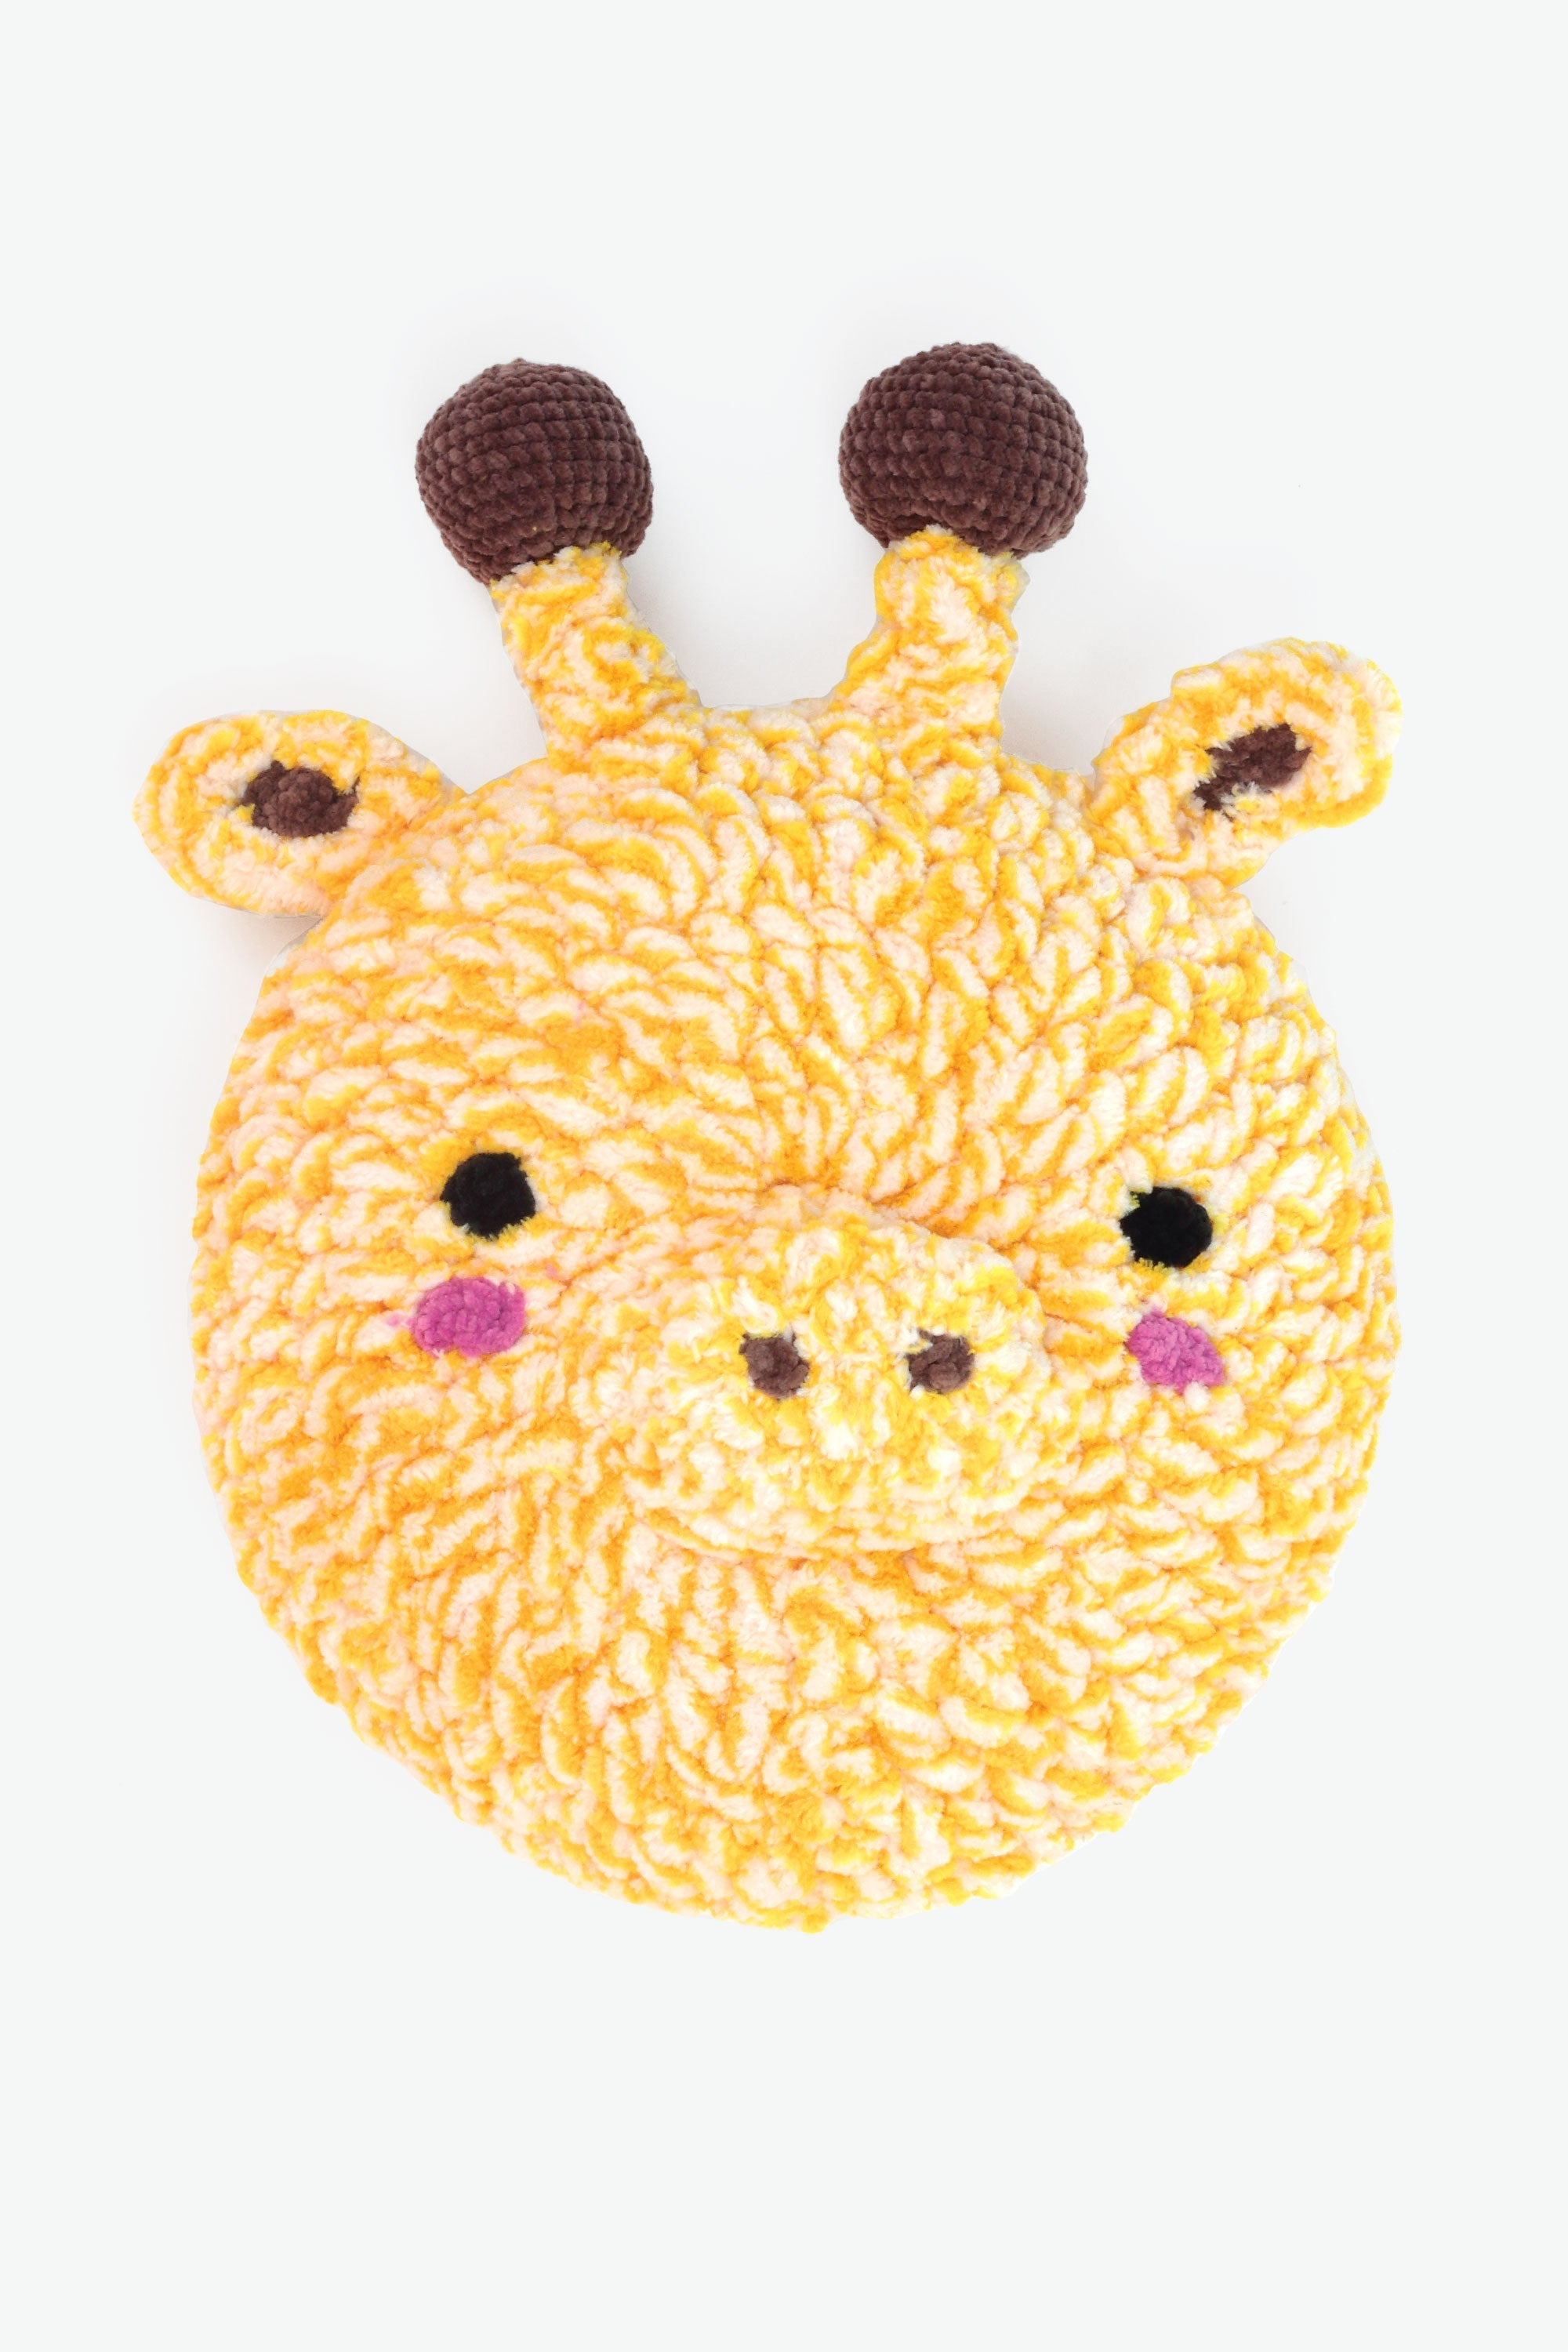 Libro de Crochet 'Mis Amigos los Animales' con Super Happy Chenille DMC - 6 Modelos Cojines